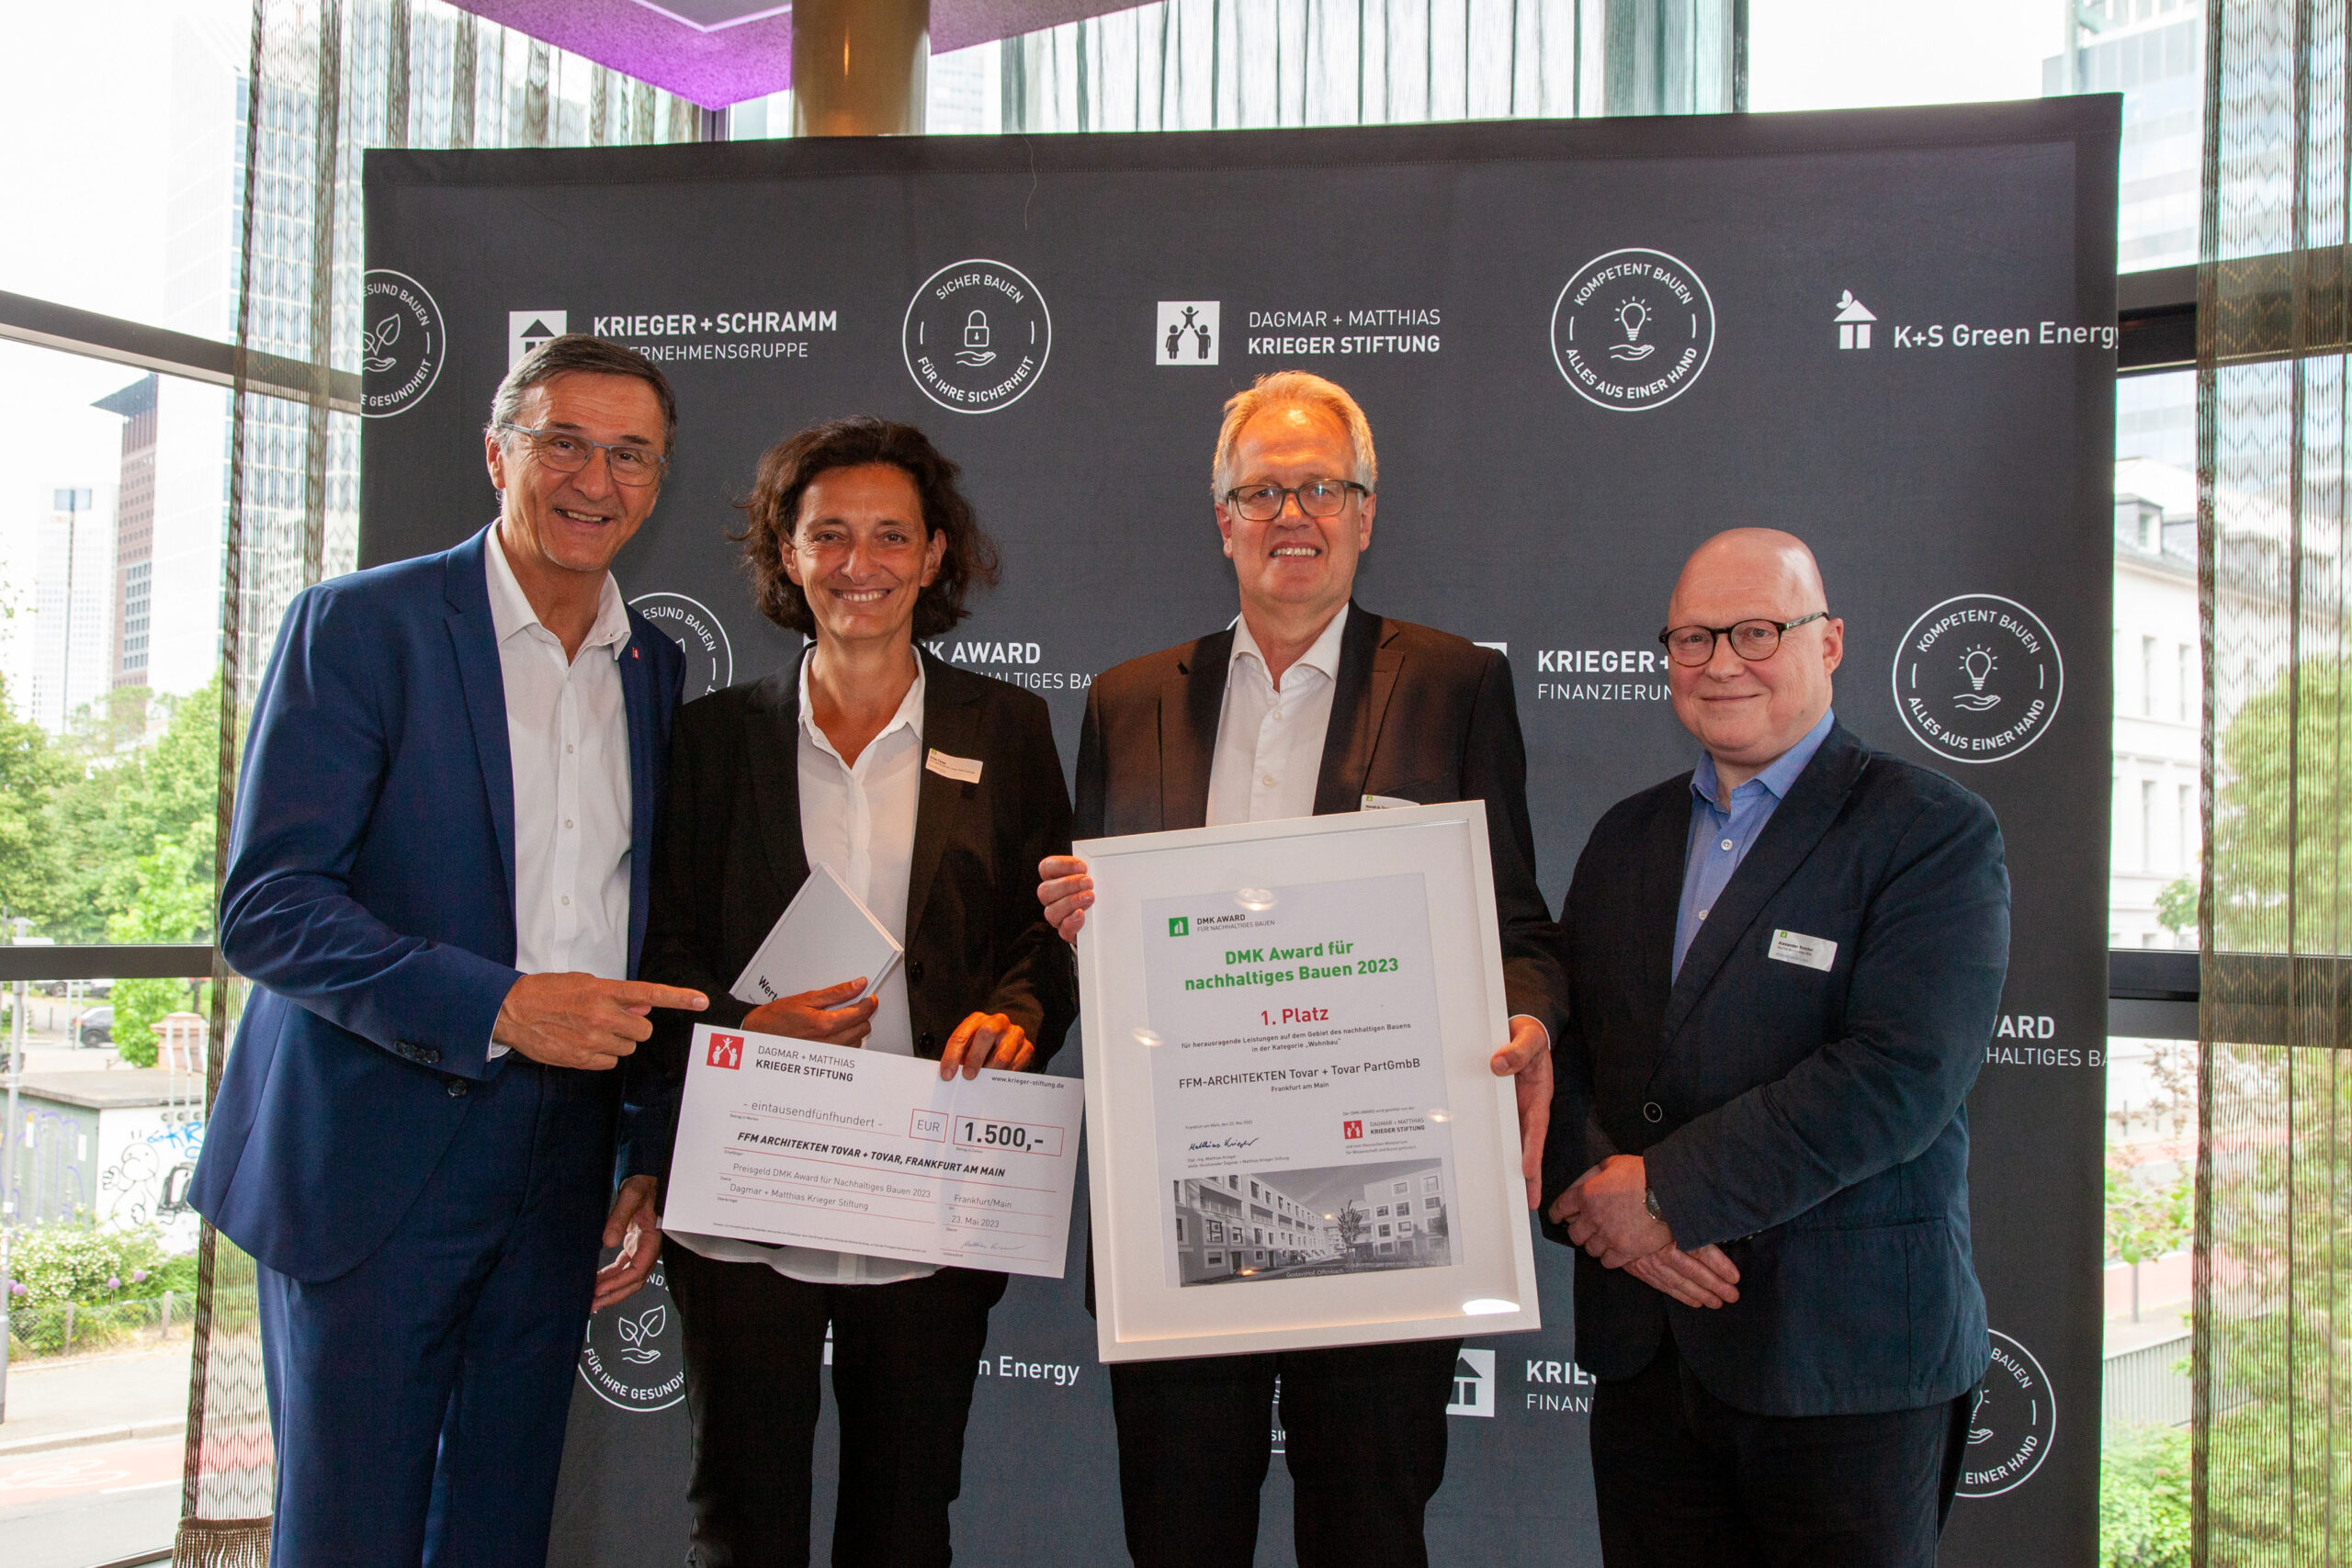 dmk-award-fuer-nachhaltiges-bauen-340-gustavshof-ffm-architekten